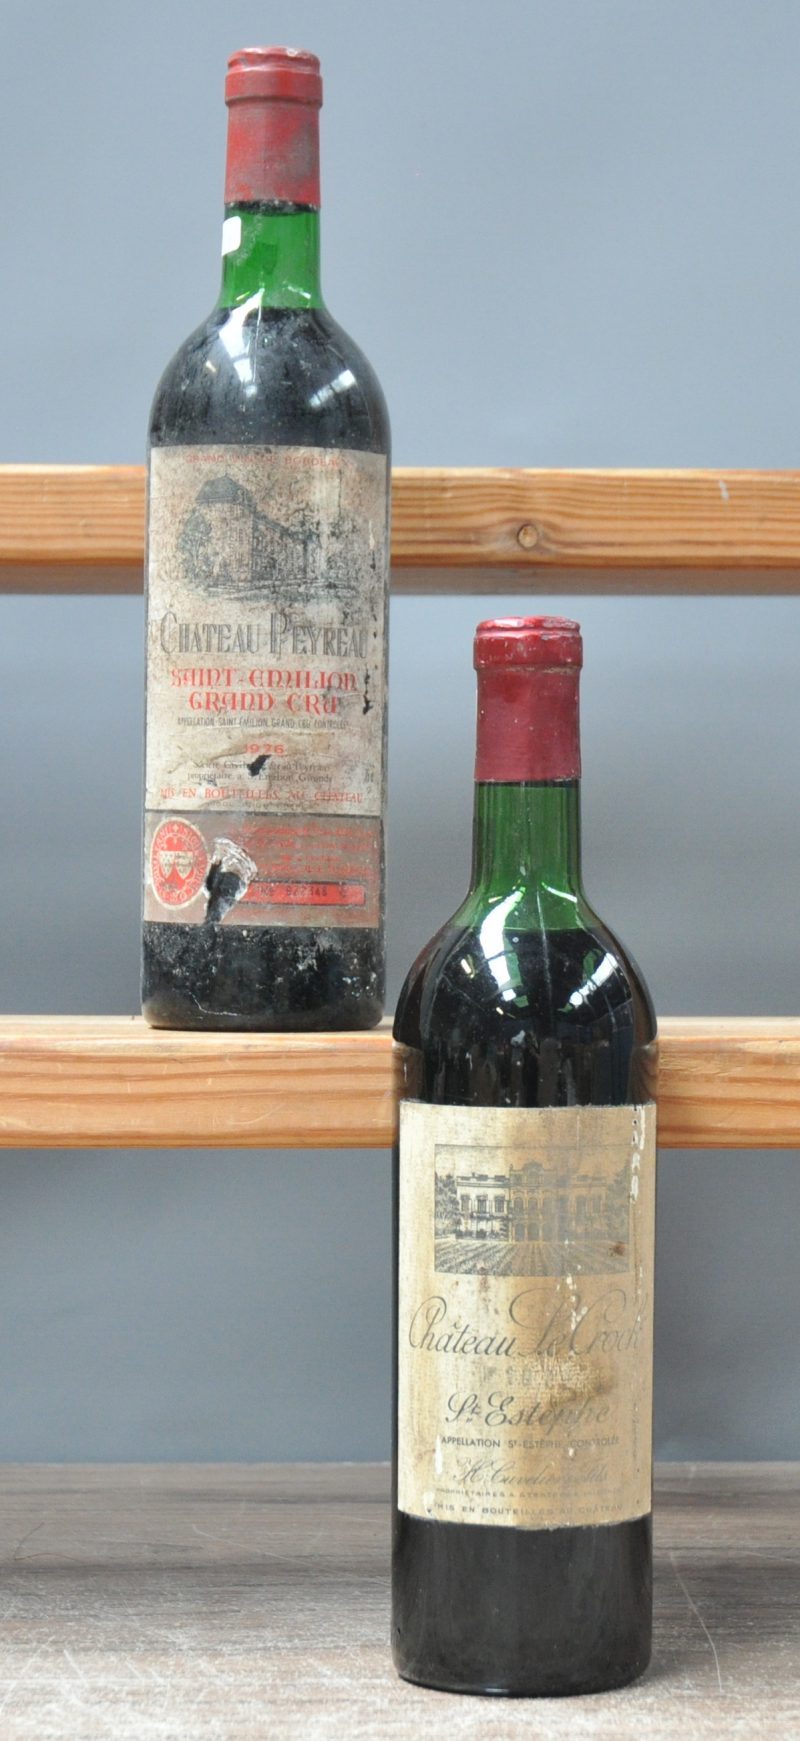 Lot rode Bordeaux        aantal: 2 Bt.    Ch. Le Crock A.C. Saint-Estèphe   M.C.  1970  aantal: 1 Bt. ts - Vuil etiket   Ch. Peyreau A.C. Saint-Emilion Grand Cru   M.C.  1976  aantal: 1 Bt. base neck - vuil etiket